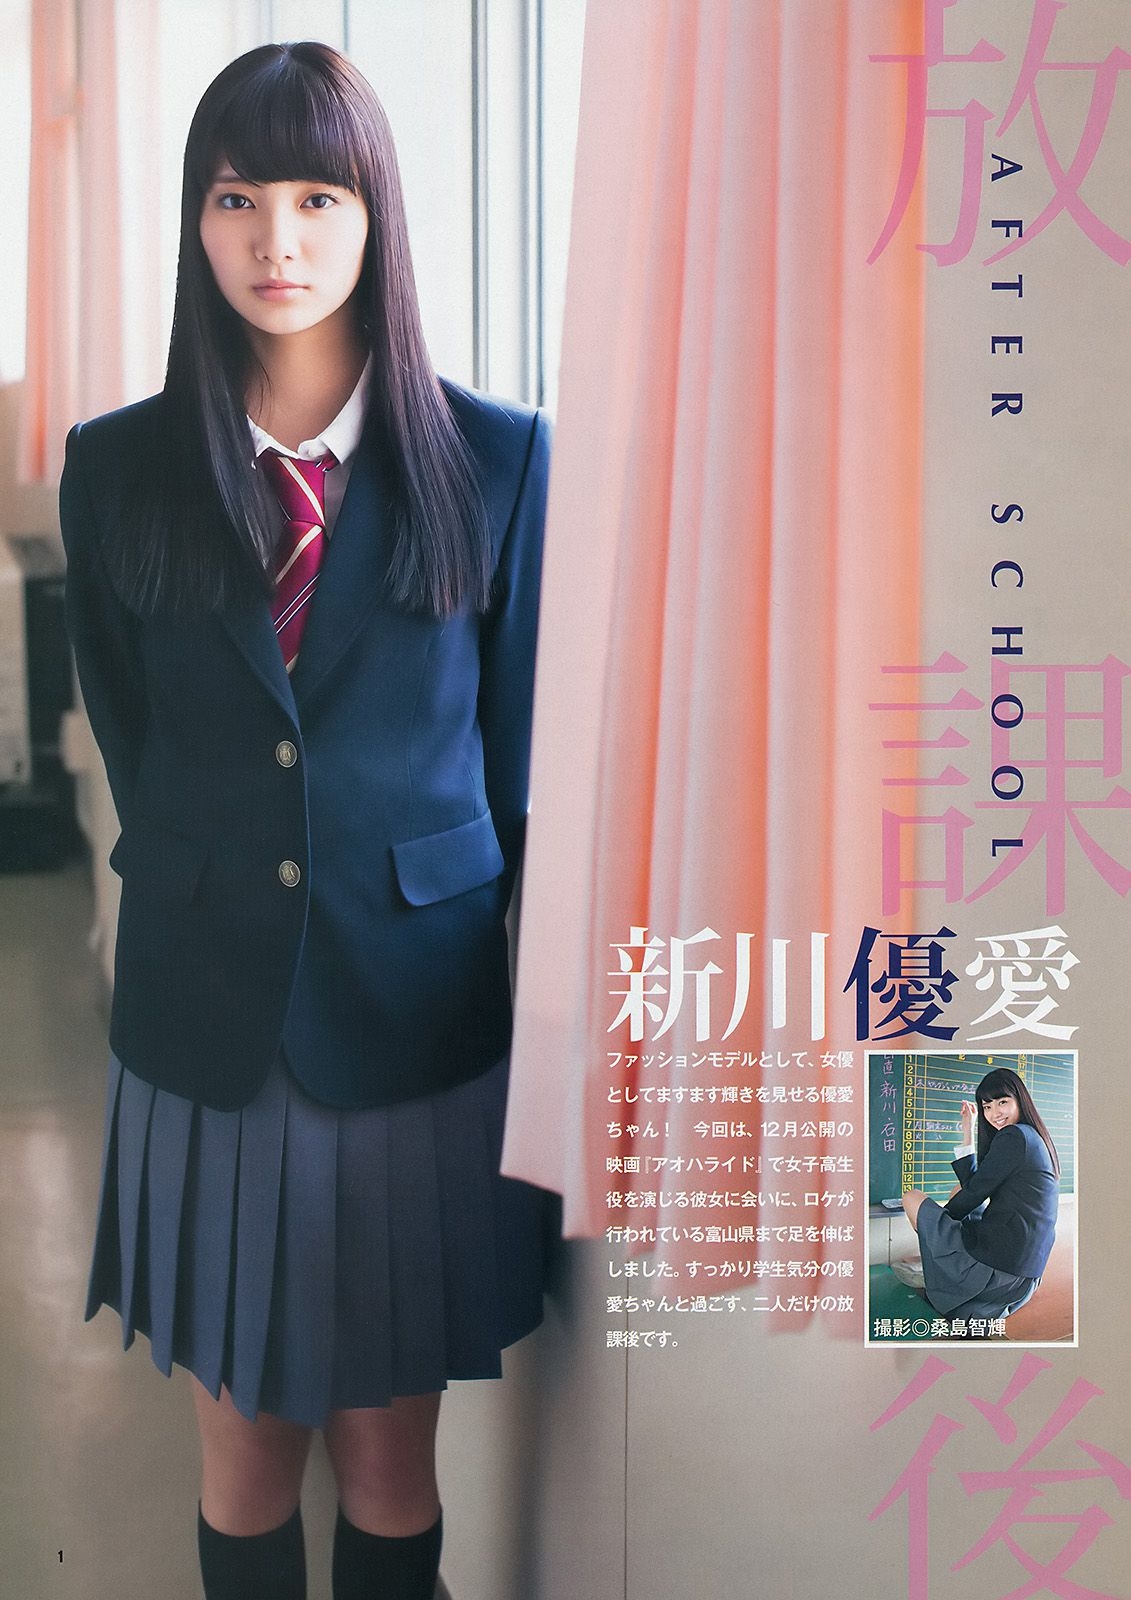 新川優愛 X21 [Weekly Young Jump] 2014年No.31 写真杂志 